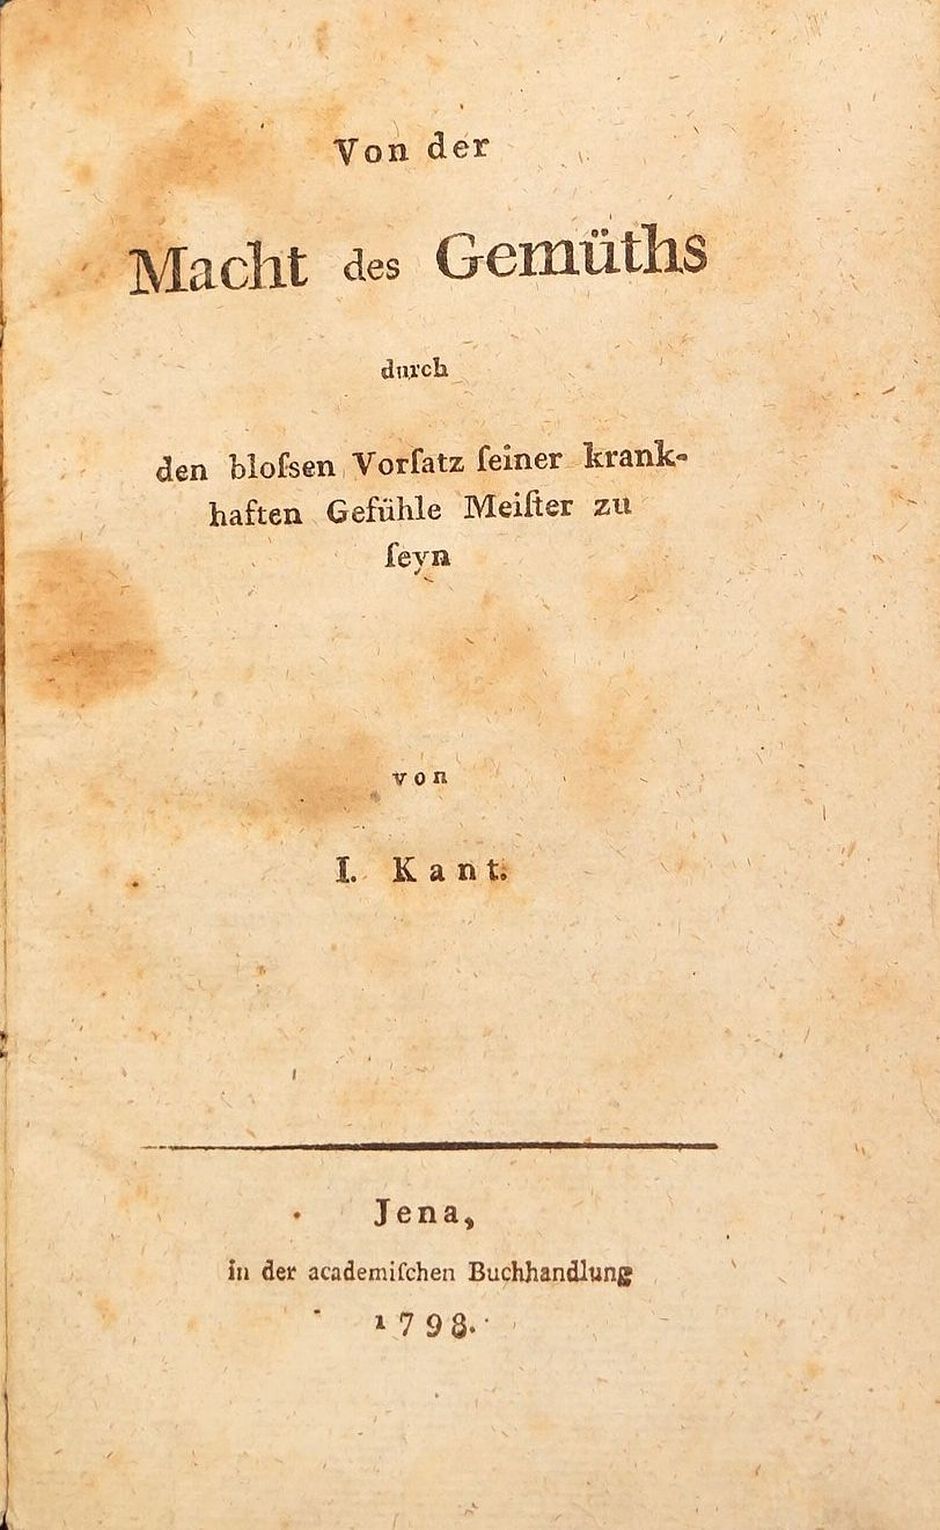 Lot 2219, Auction  115, Kant, Immanuel, Von der Macht des Gemüths